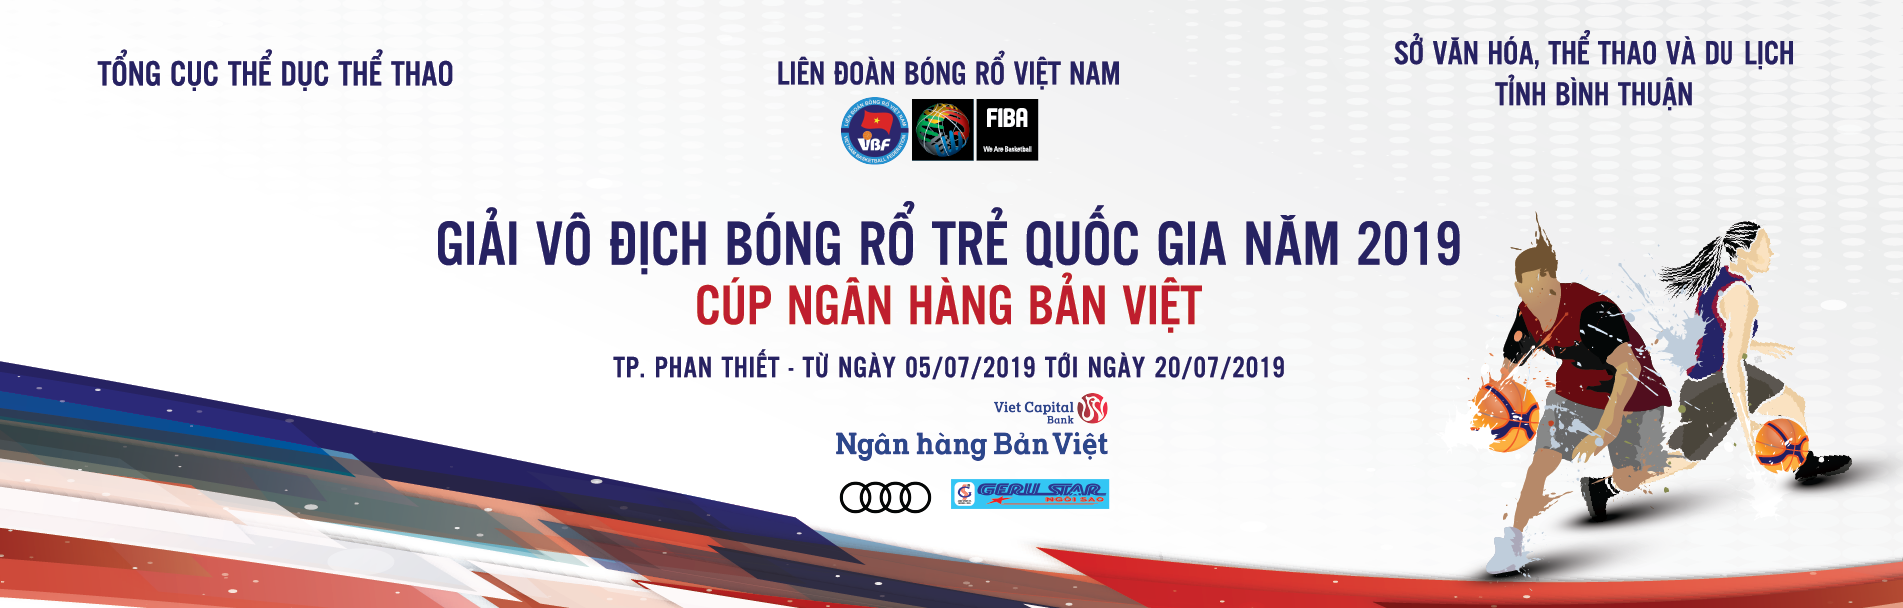 Thông cáo báo chí: Giải Vô địch Bóng rổ Trẻ Quốc gia năm 2019 - Cúp Ngân hàng Bản Việt